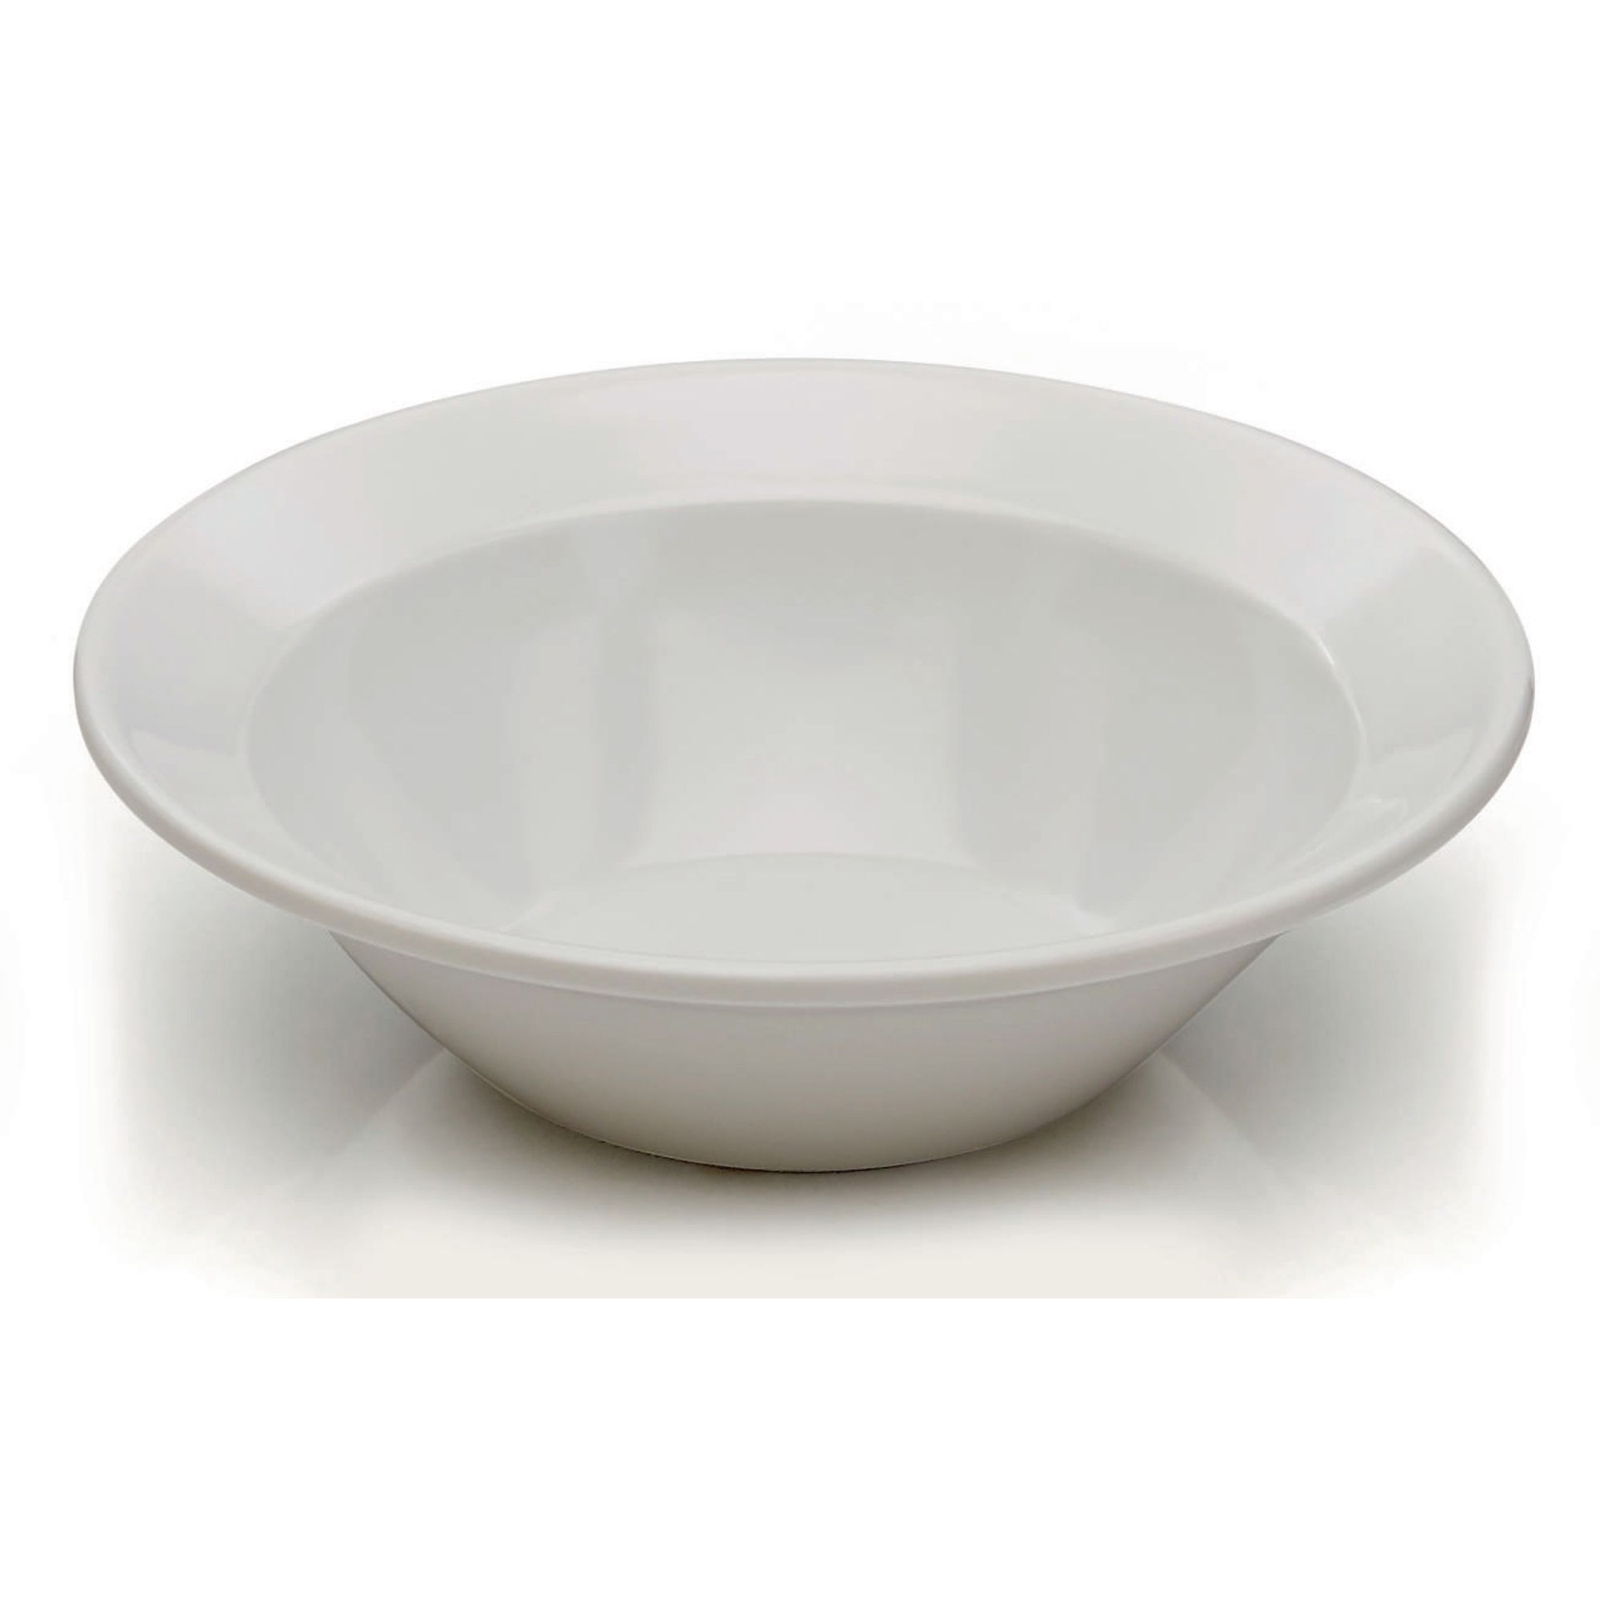 White Melamine Tableware - 180mm Bowl